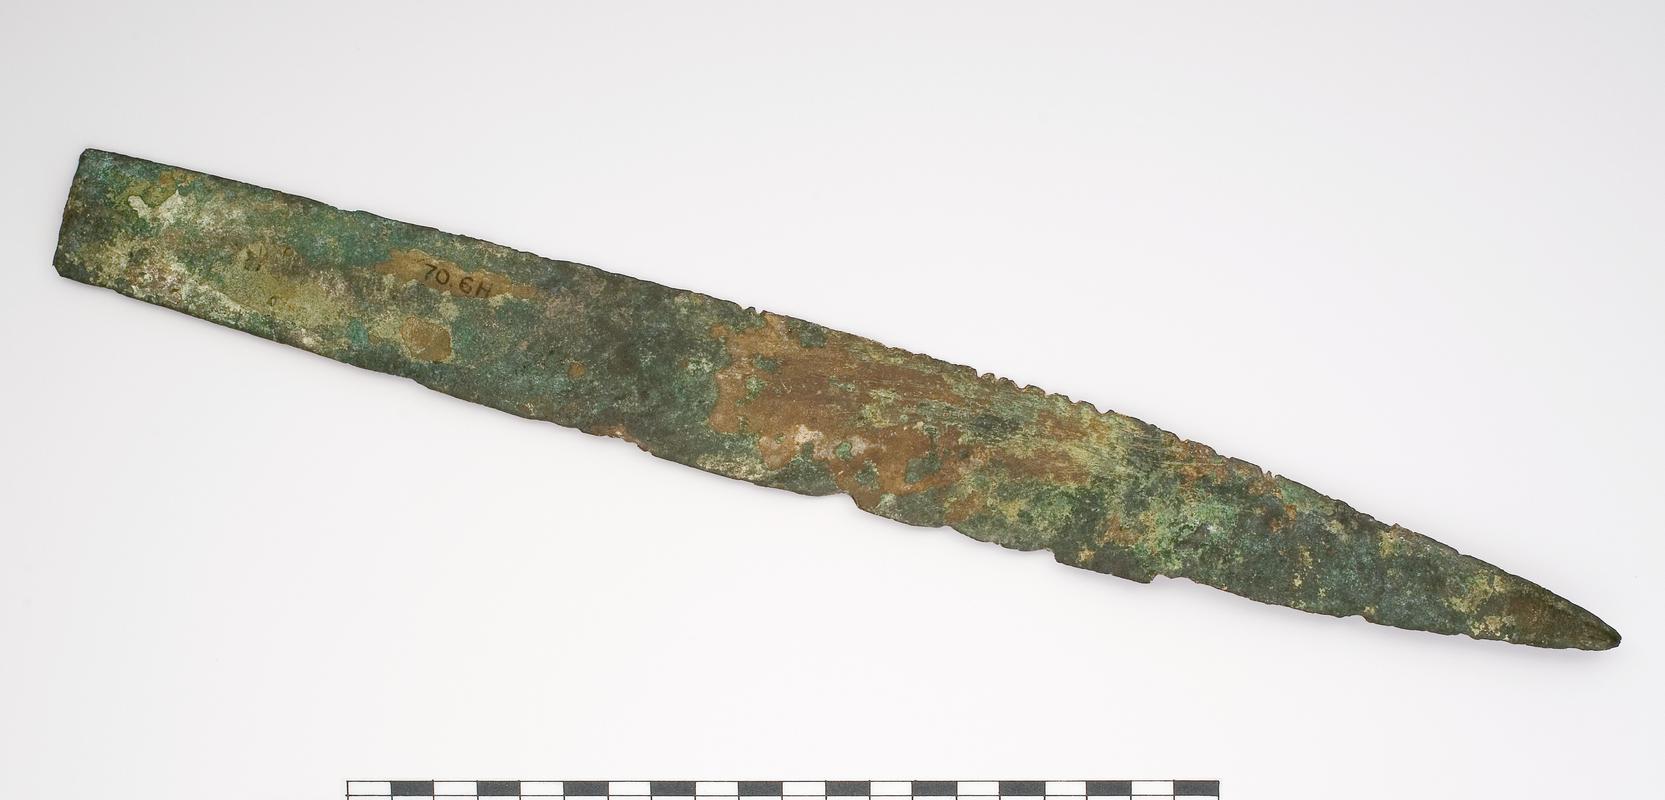 Bronze Age bronze sword